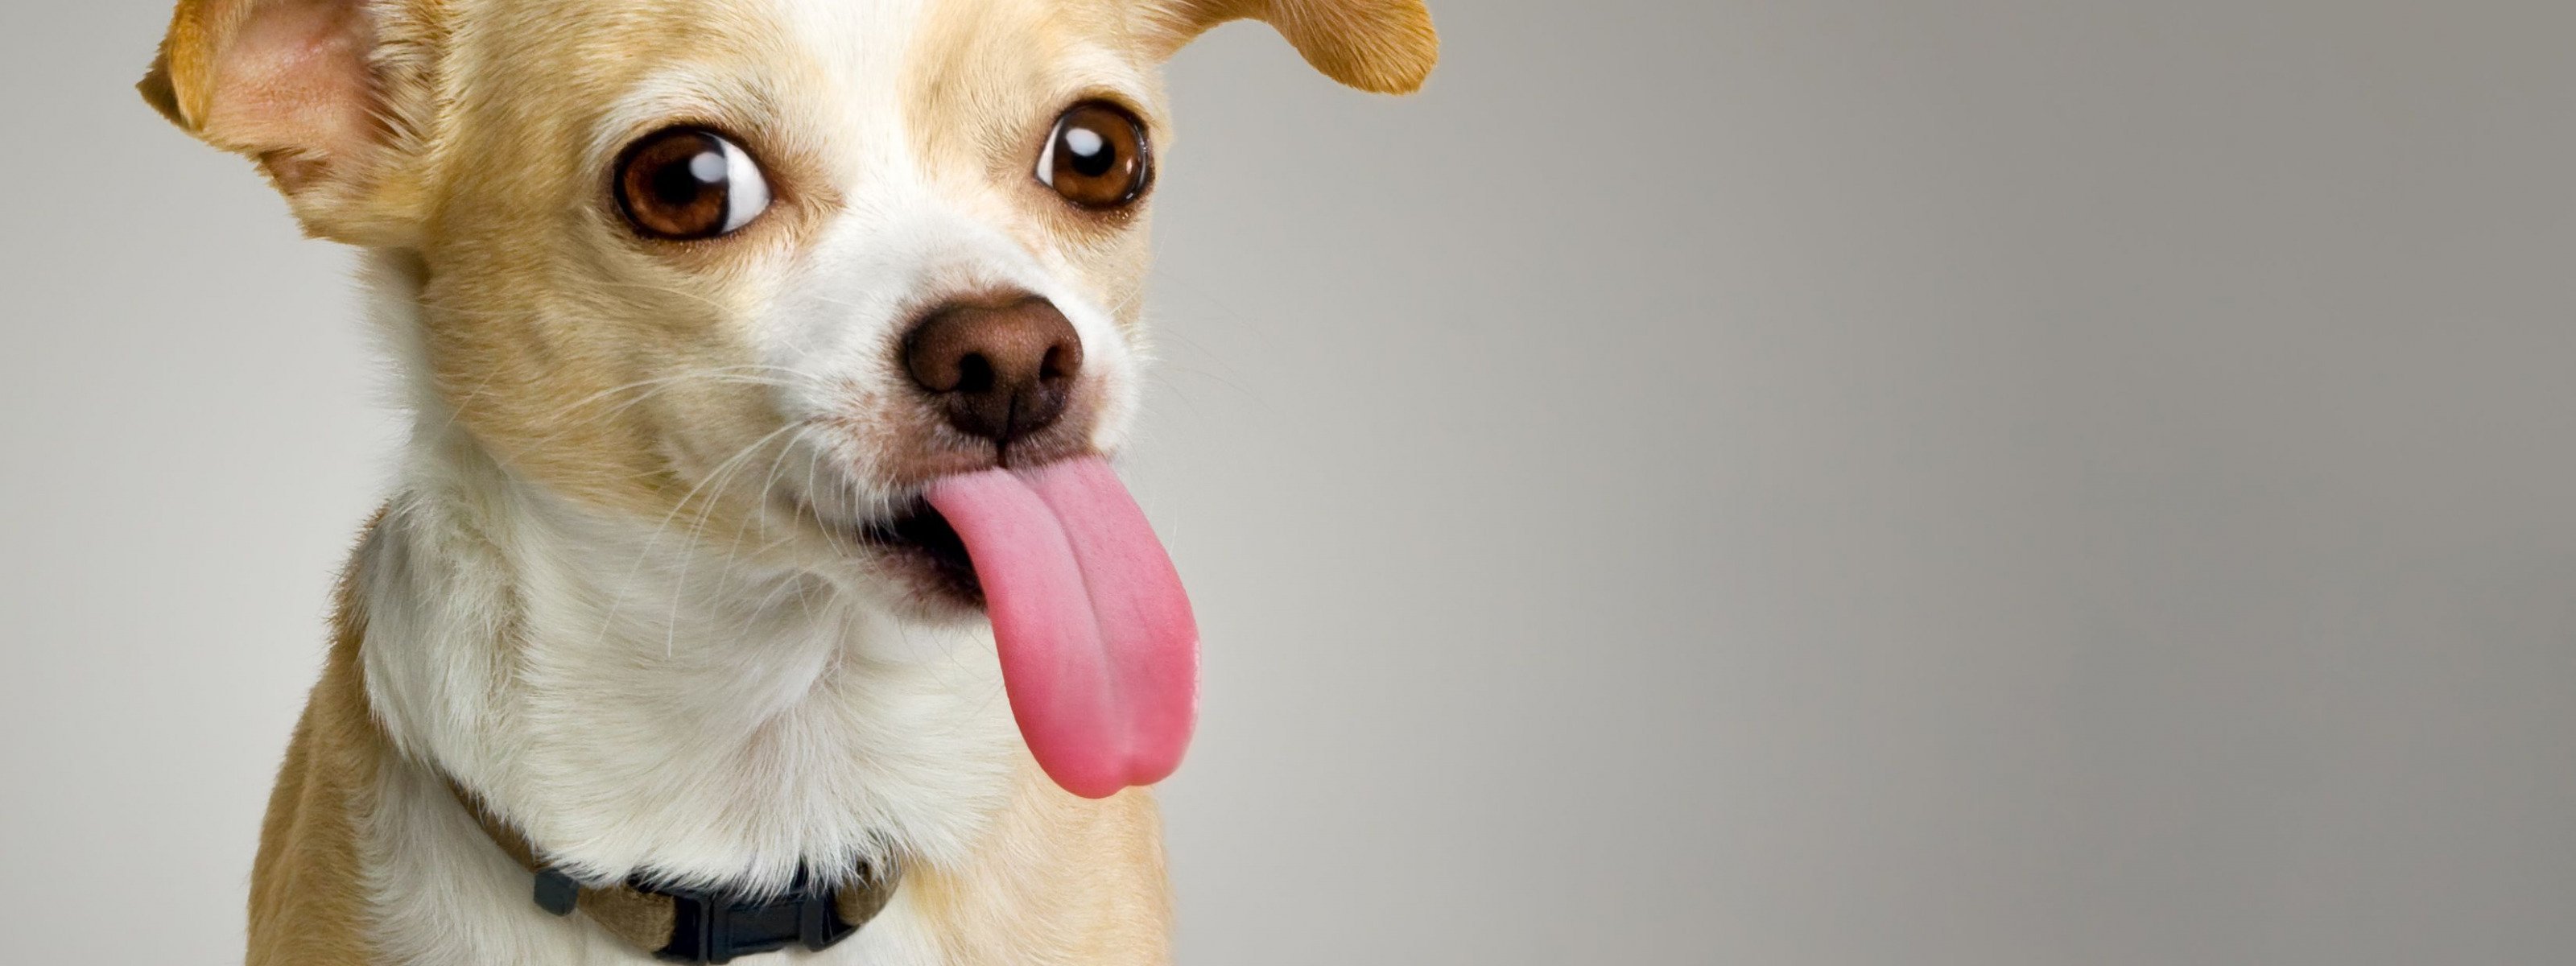 Свесив набок длинный розовый язык. Собака с высунутым языком. Смешные собаки. Фото собаки с высунутым языком. Смешная собака на белом фоне.